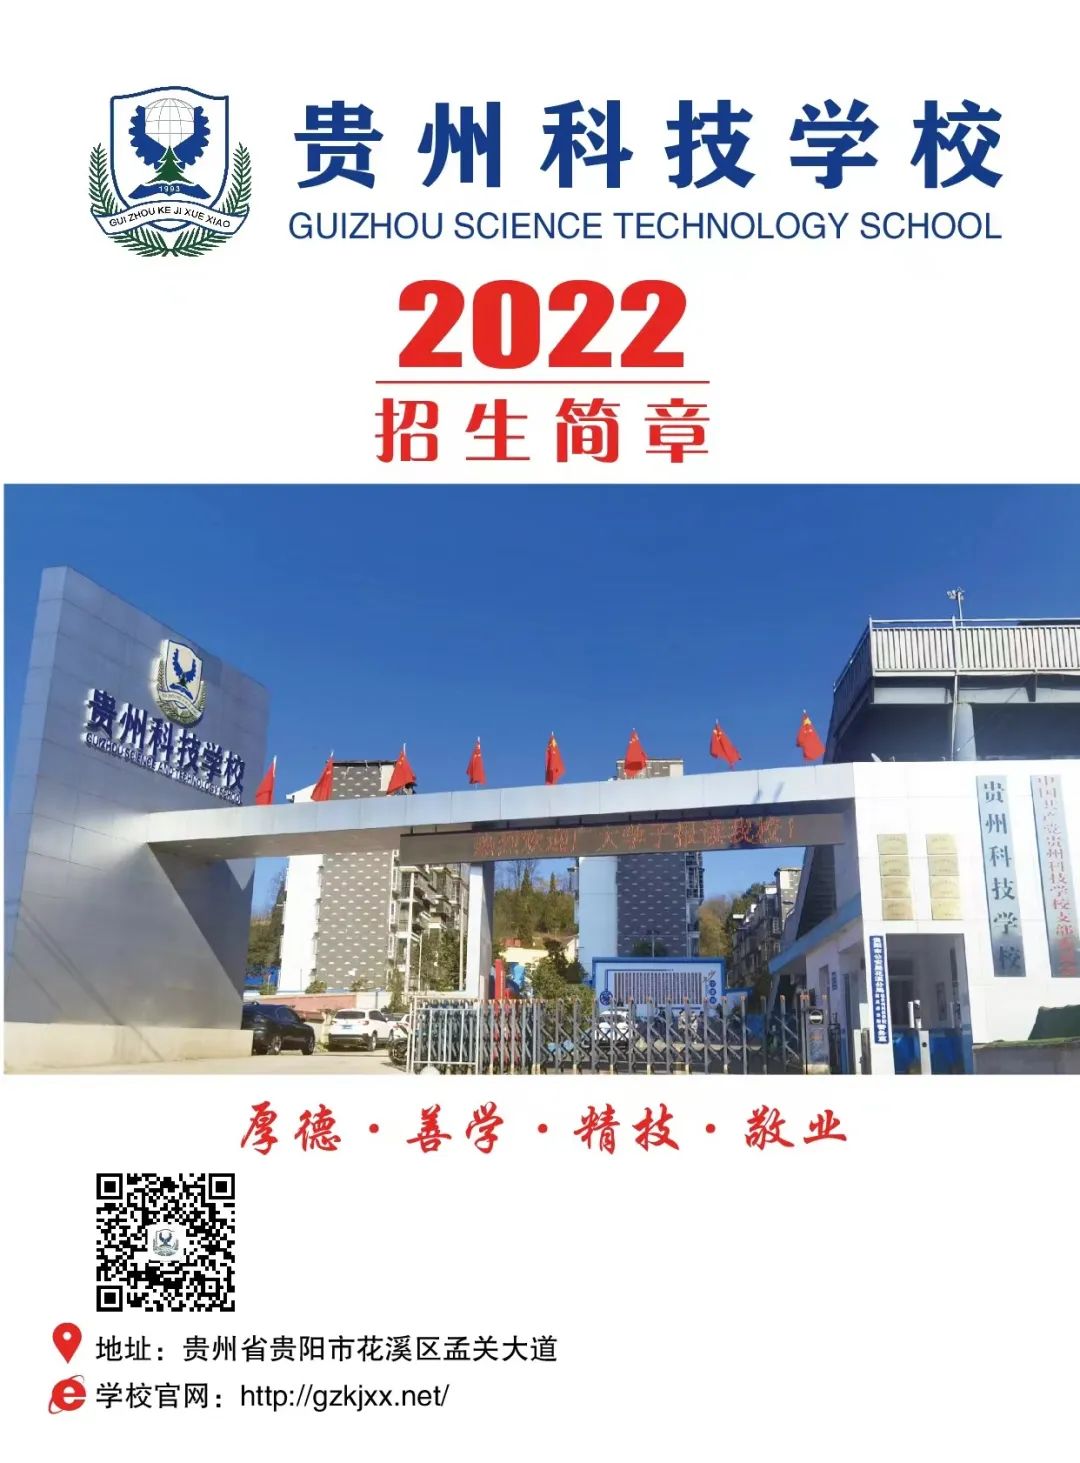 贵州省科技学校2022年招生简章